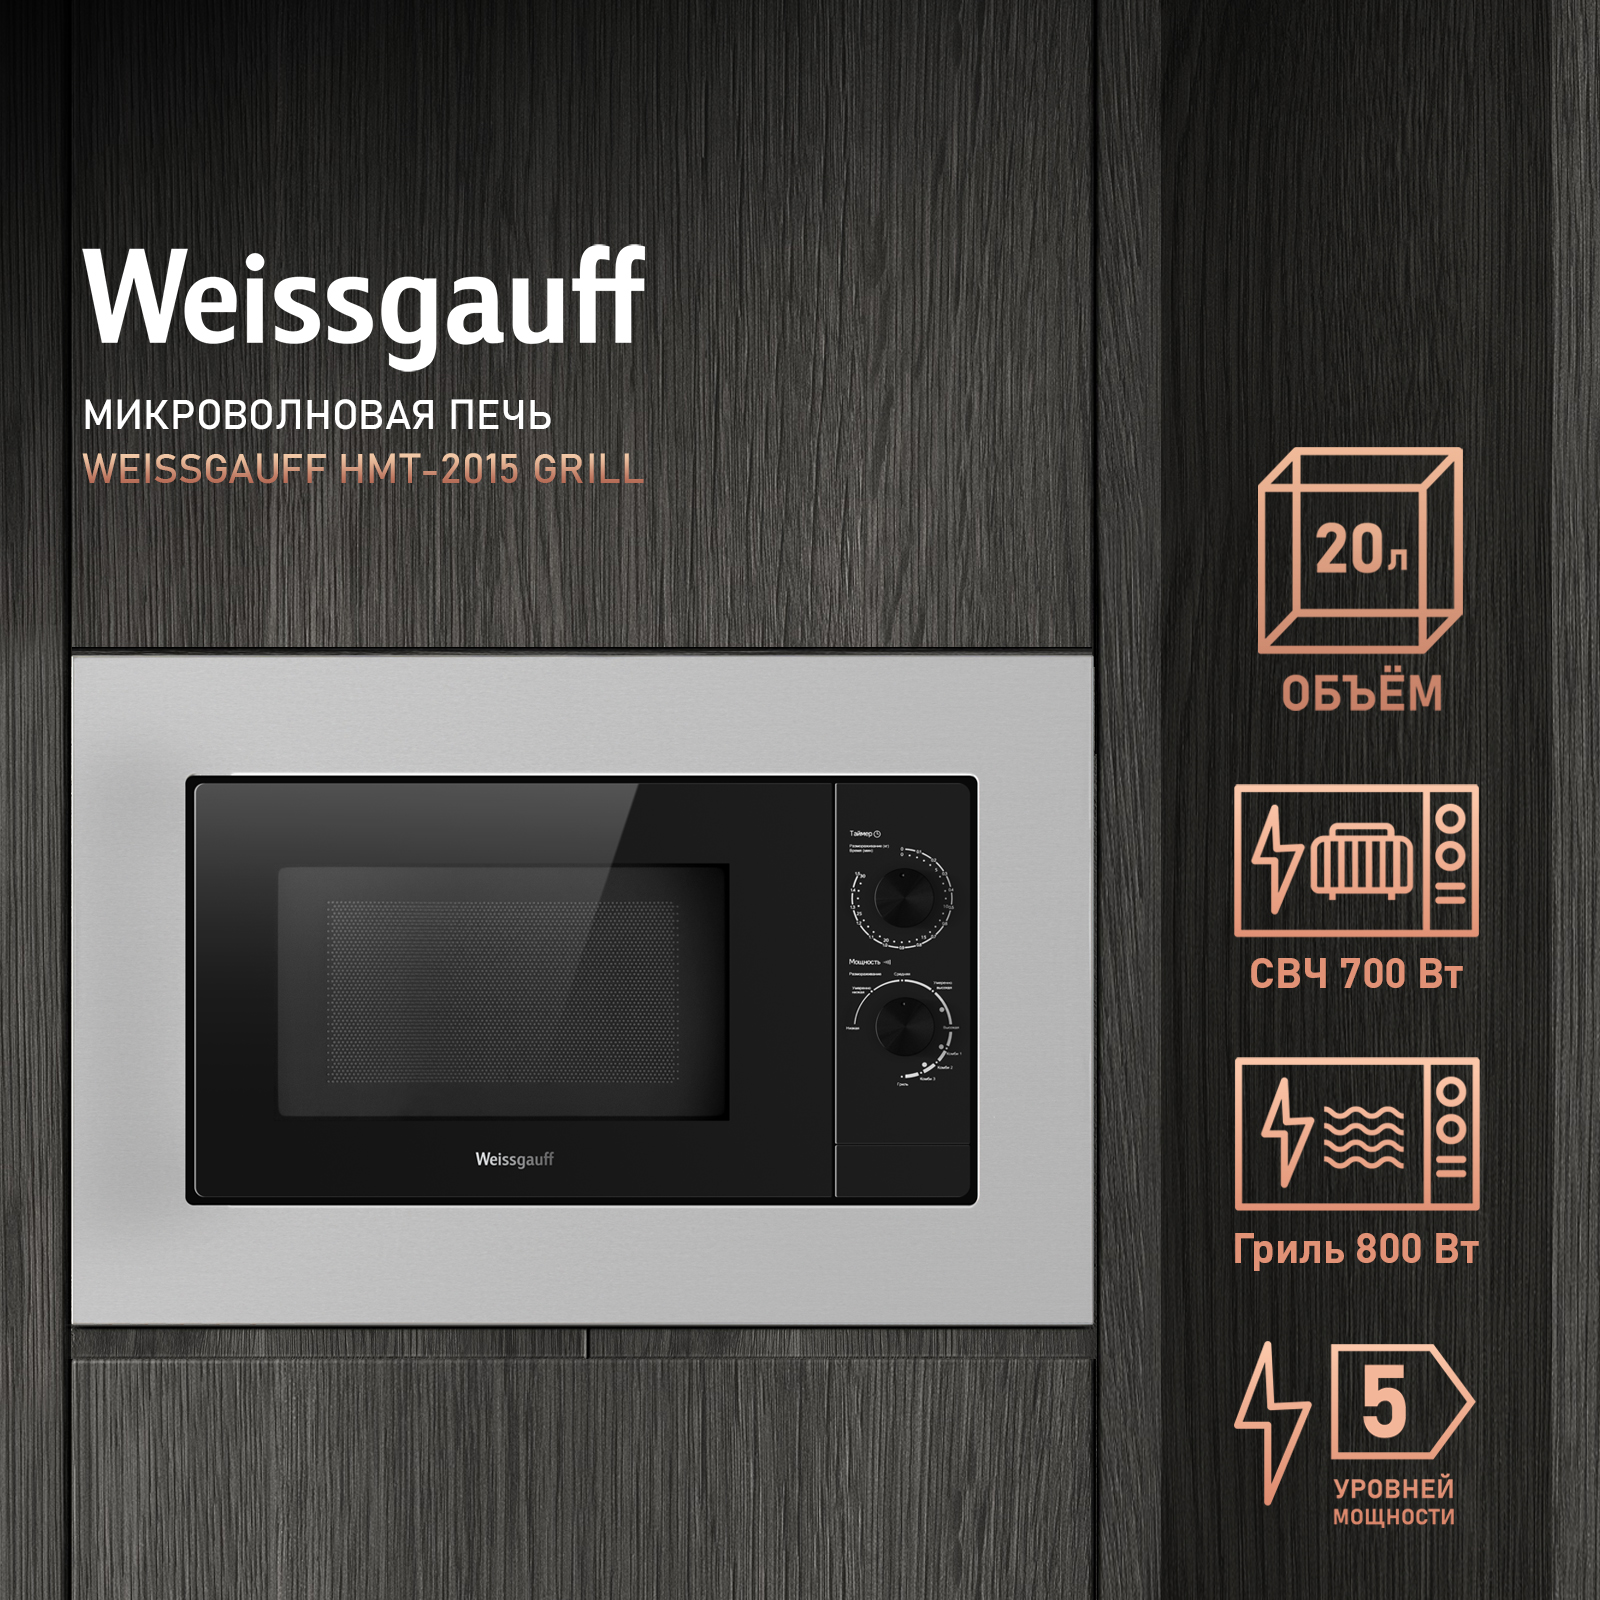 Встраиваемая микроволновая печь Weissgauff HMT-2015 Grill серебристая встраиваемая микроволновая печь weissgauff hmt 205